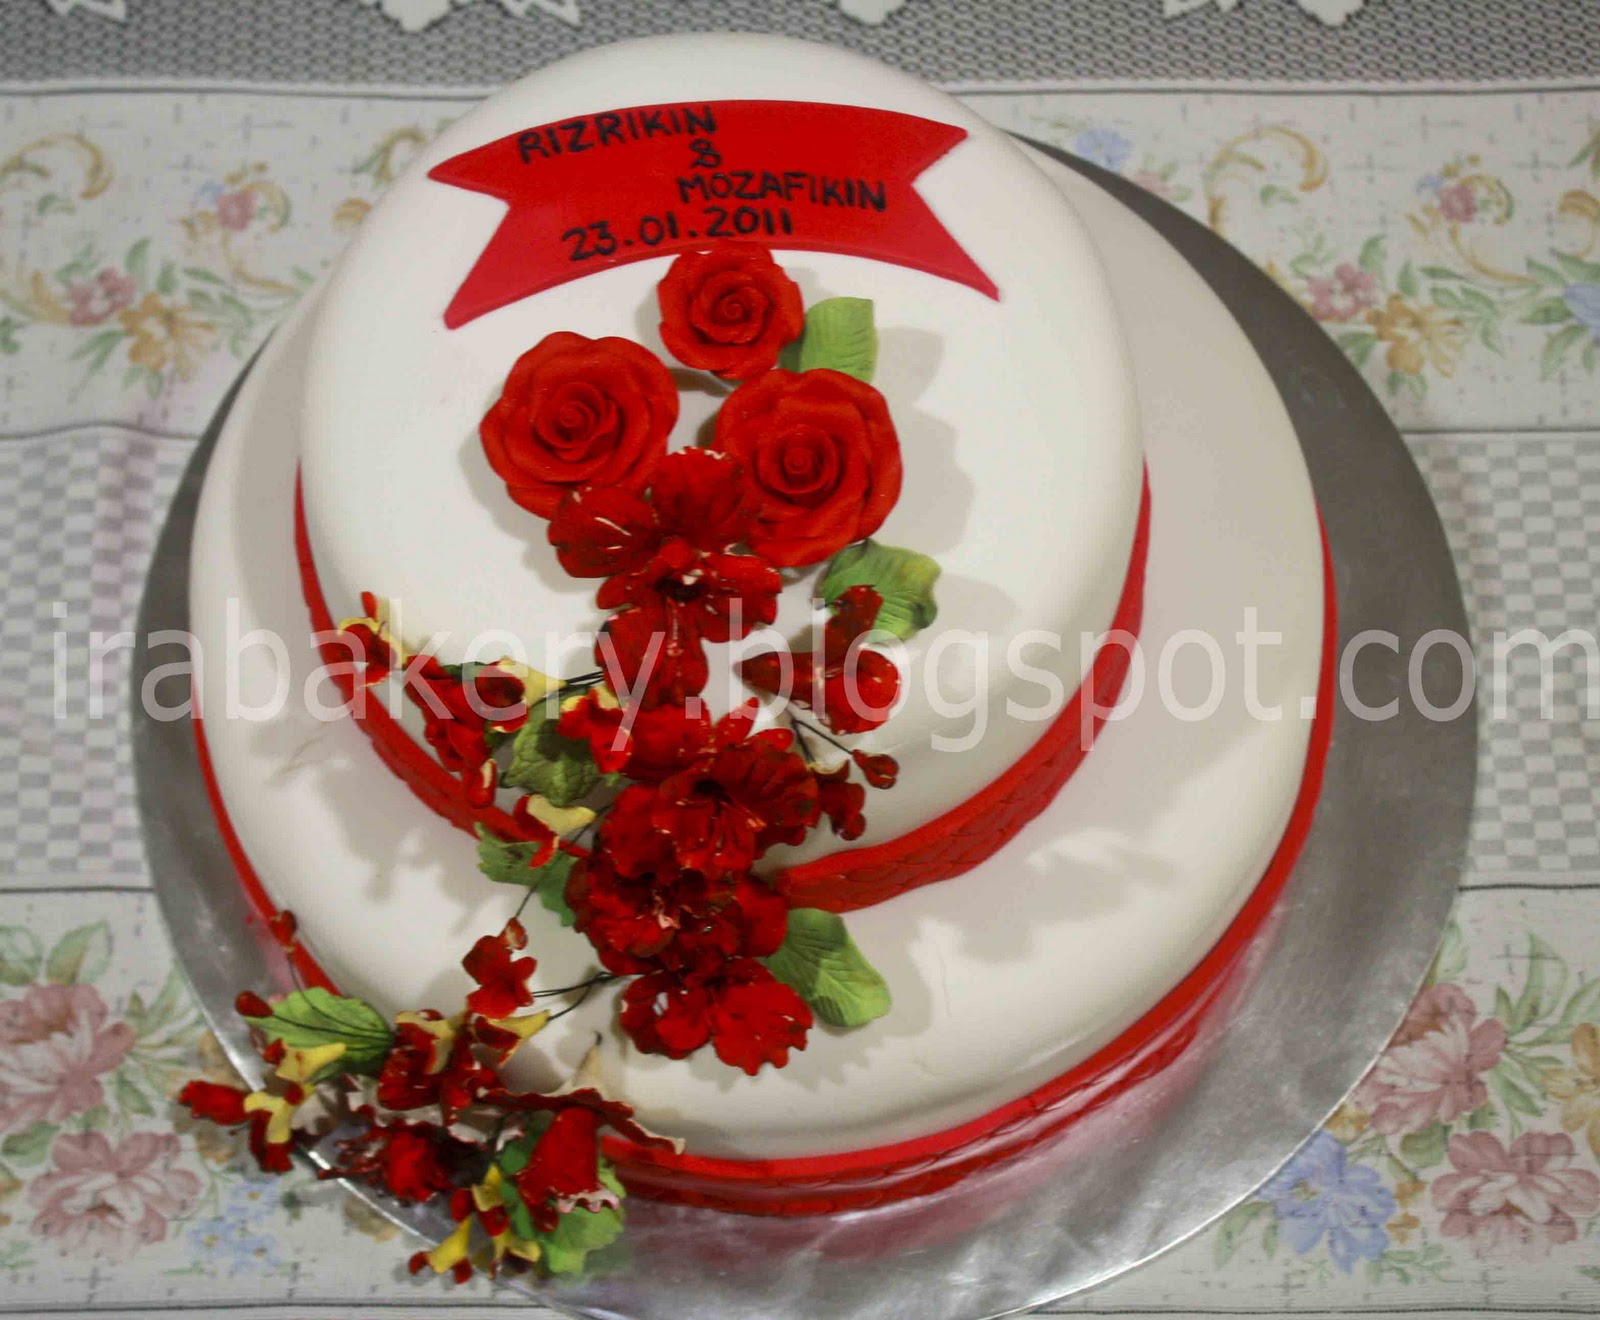 chinese wedding cakes